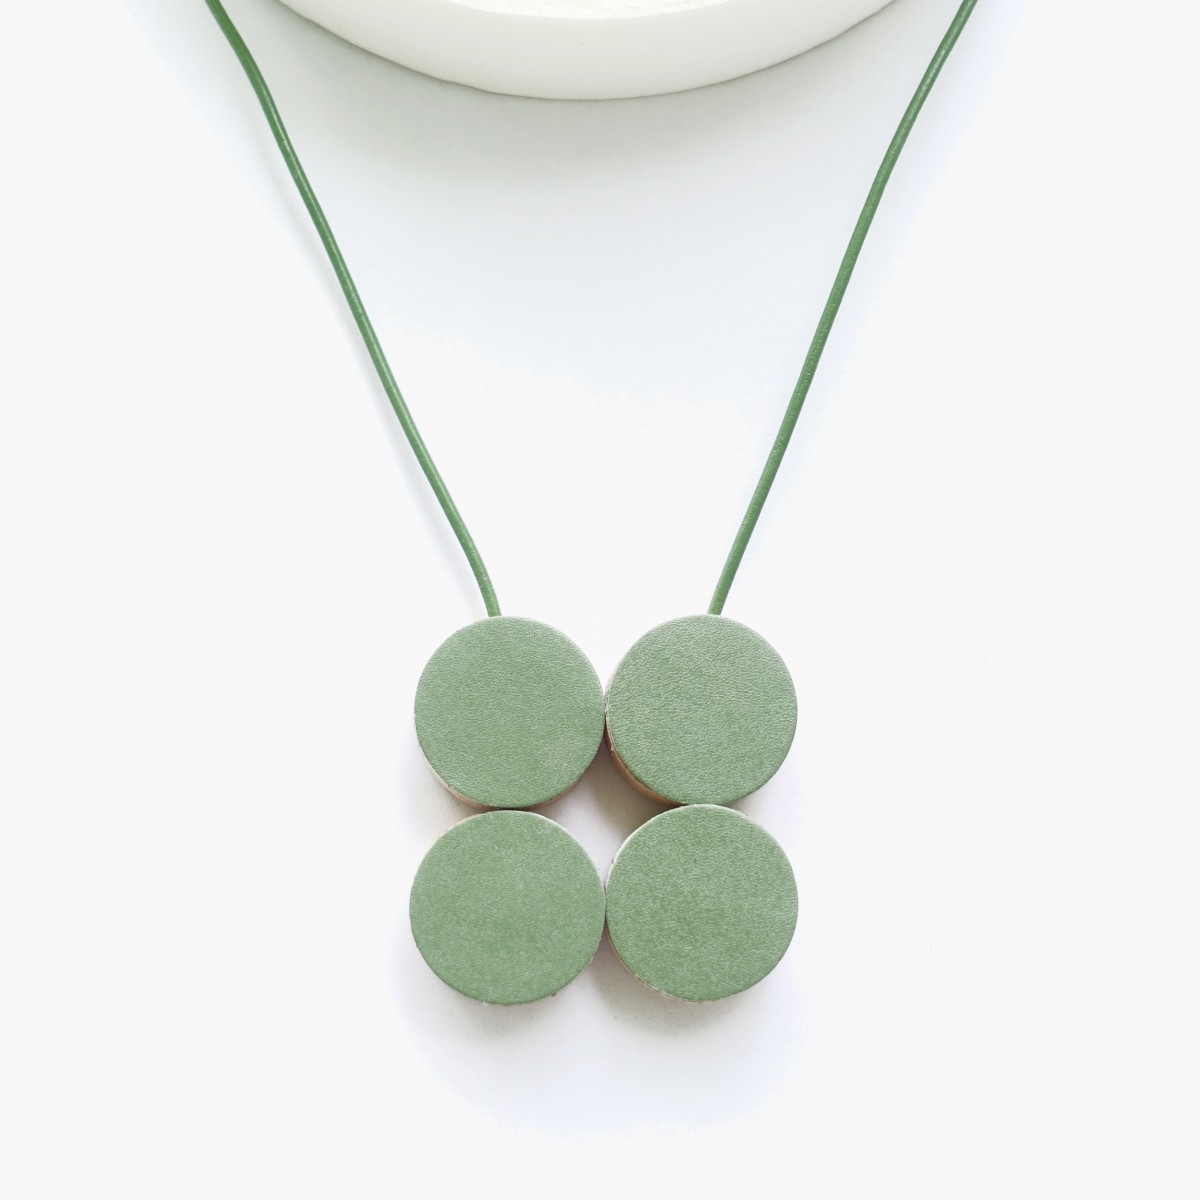 EINFACHDESIGN, magnetische Kette für verschiedene Kettenformationen, Leder auf Holz mit Lederband, grün